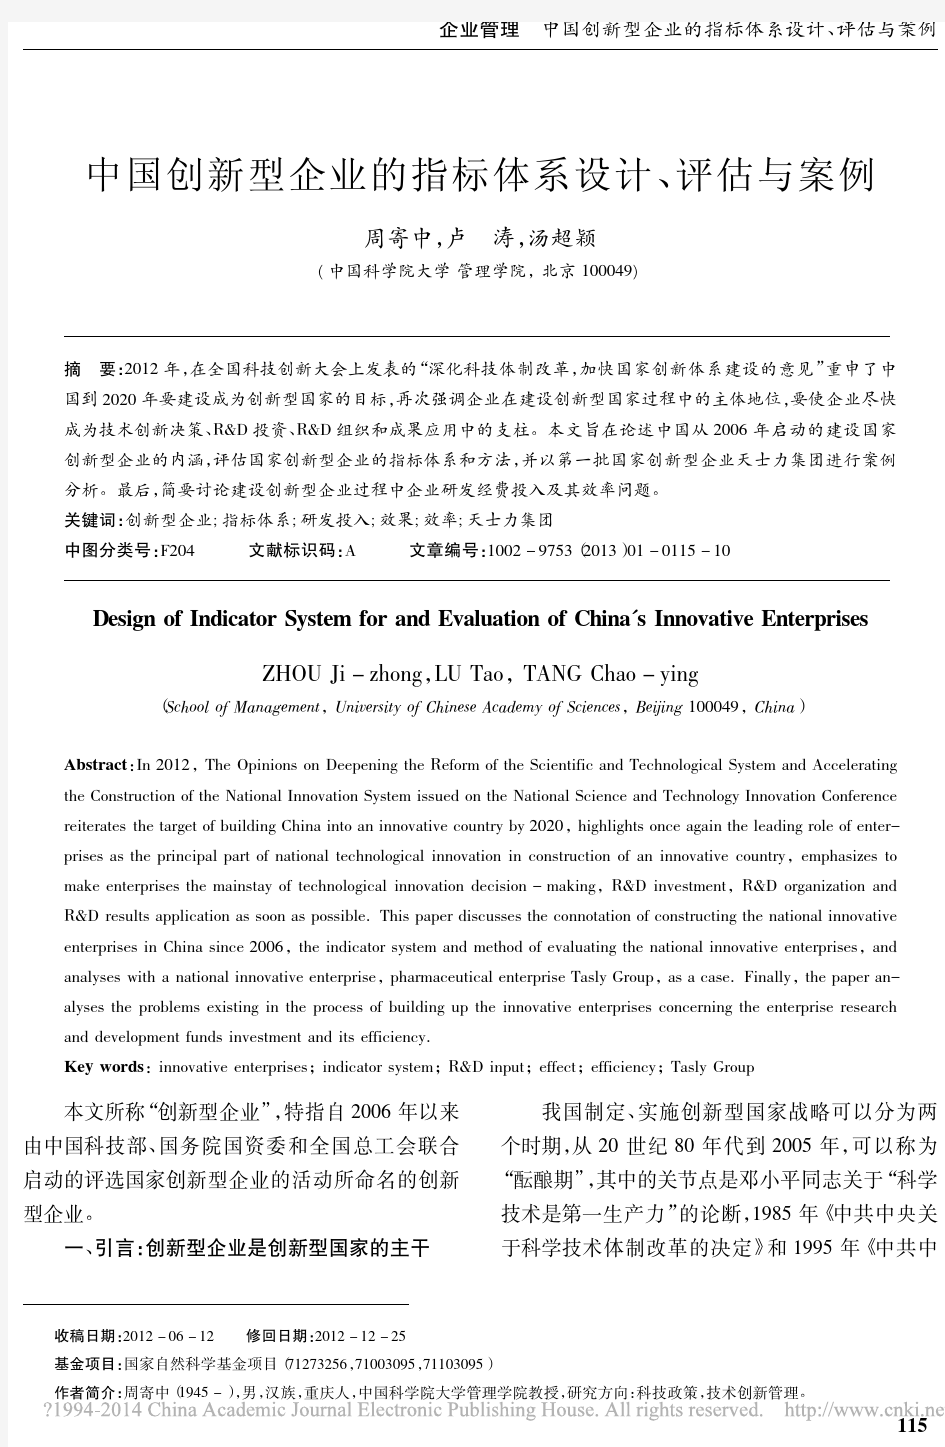 01-13(周寄中)中国创新型企业的指标体系设计、评估与案例